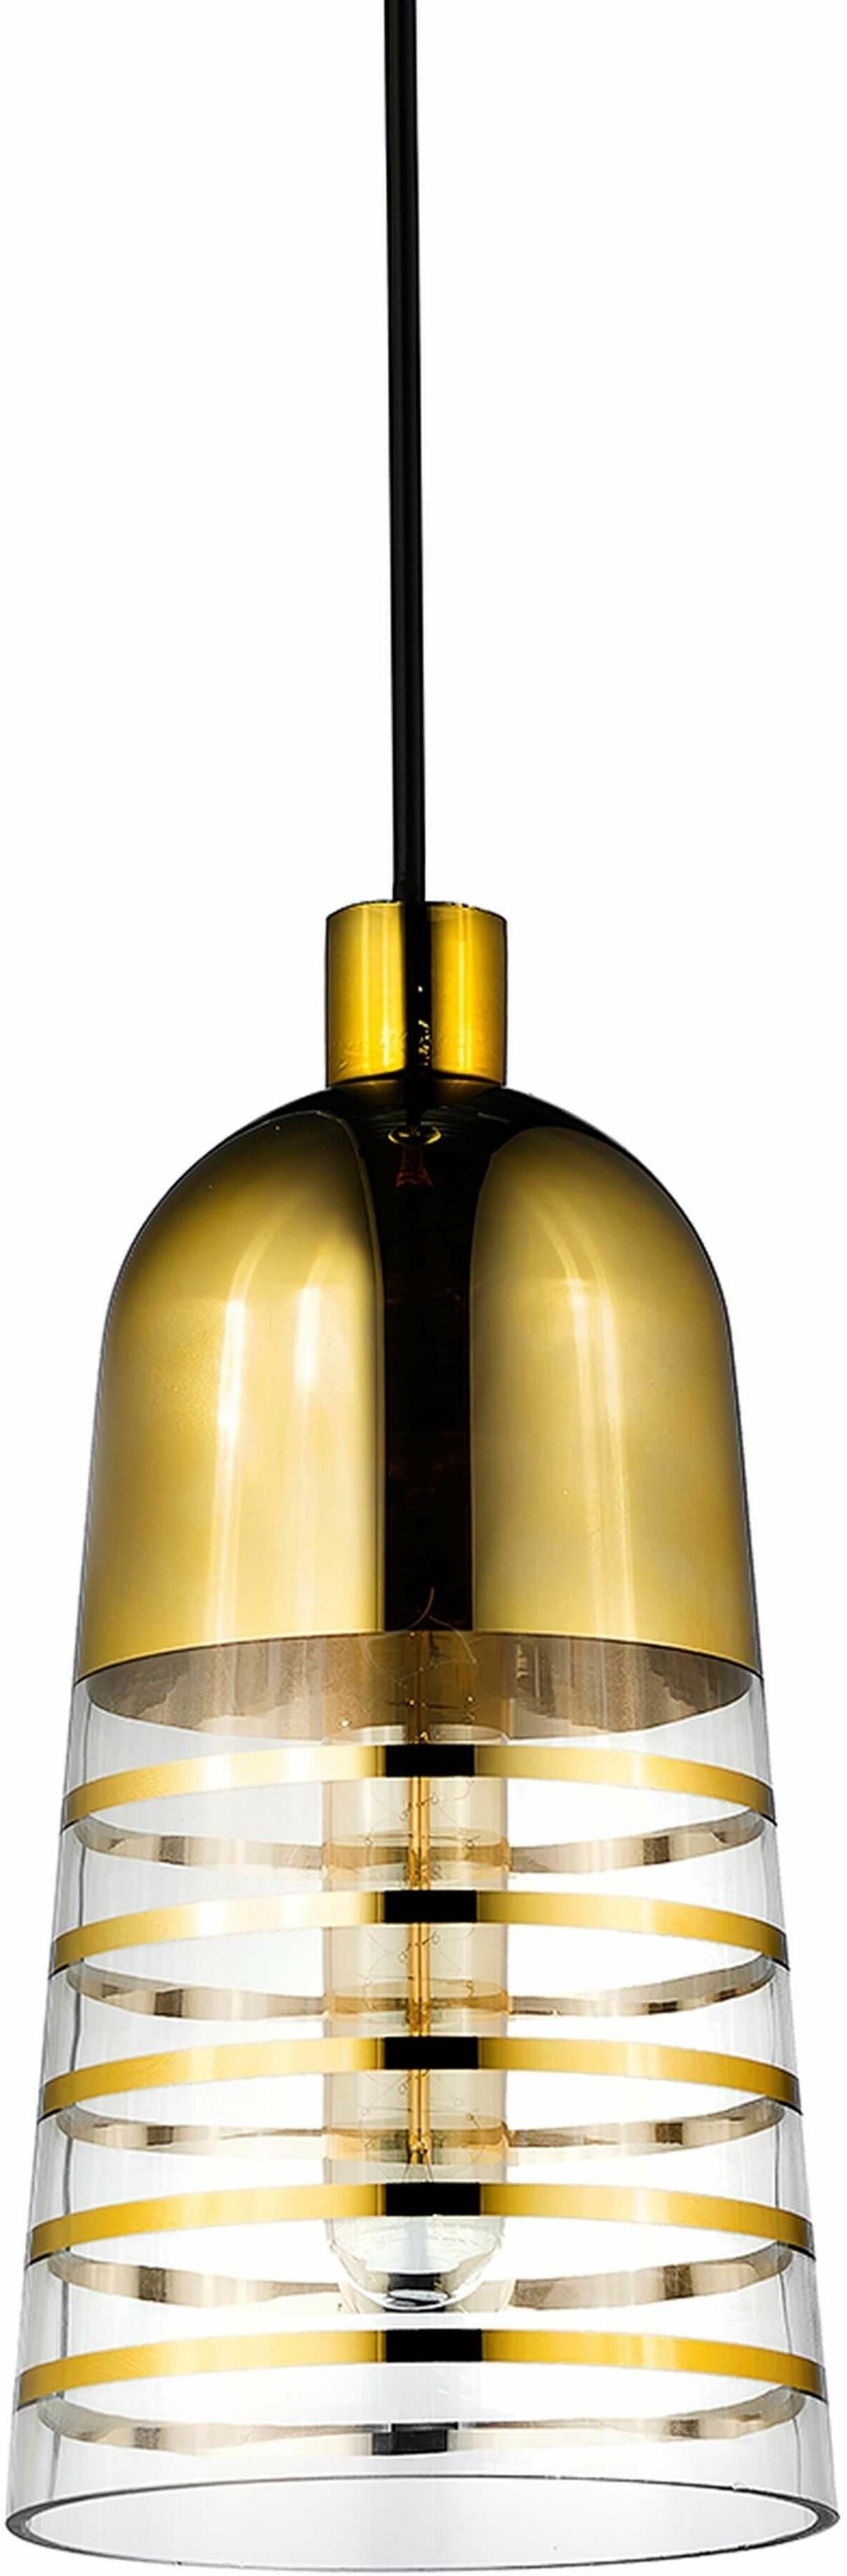 Etrica lampa wisząca złota nowoczesna LDP 6815-1 (GD) Lumina Deco // Rabaty w koszyku i darmowa dostawa od 299zł !